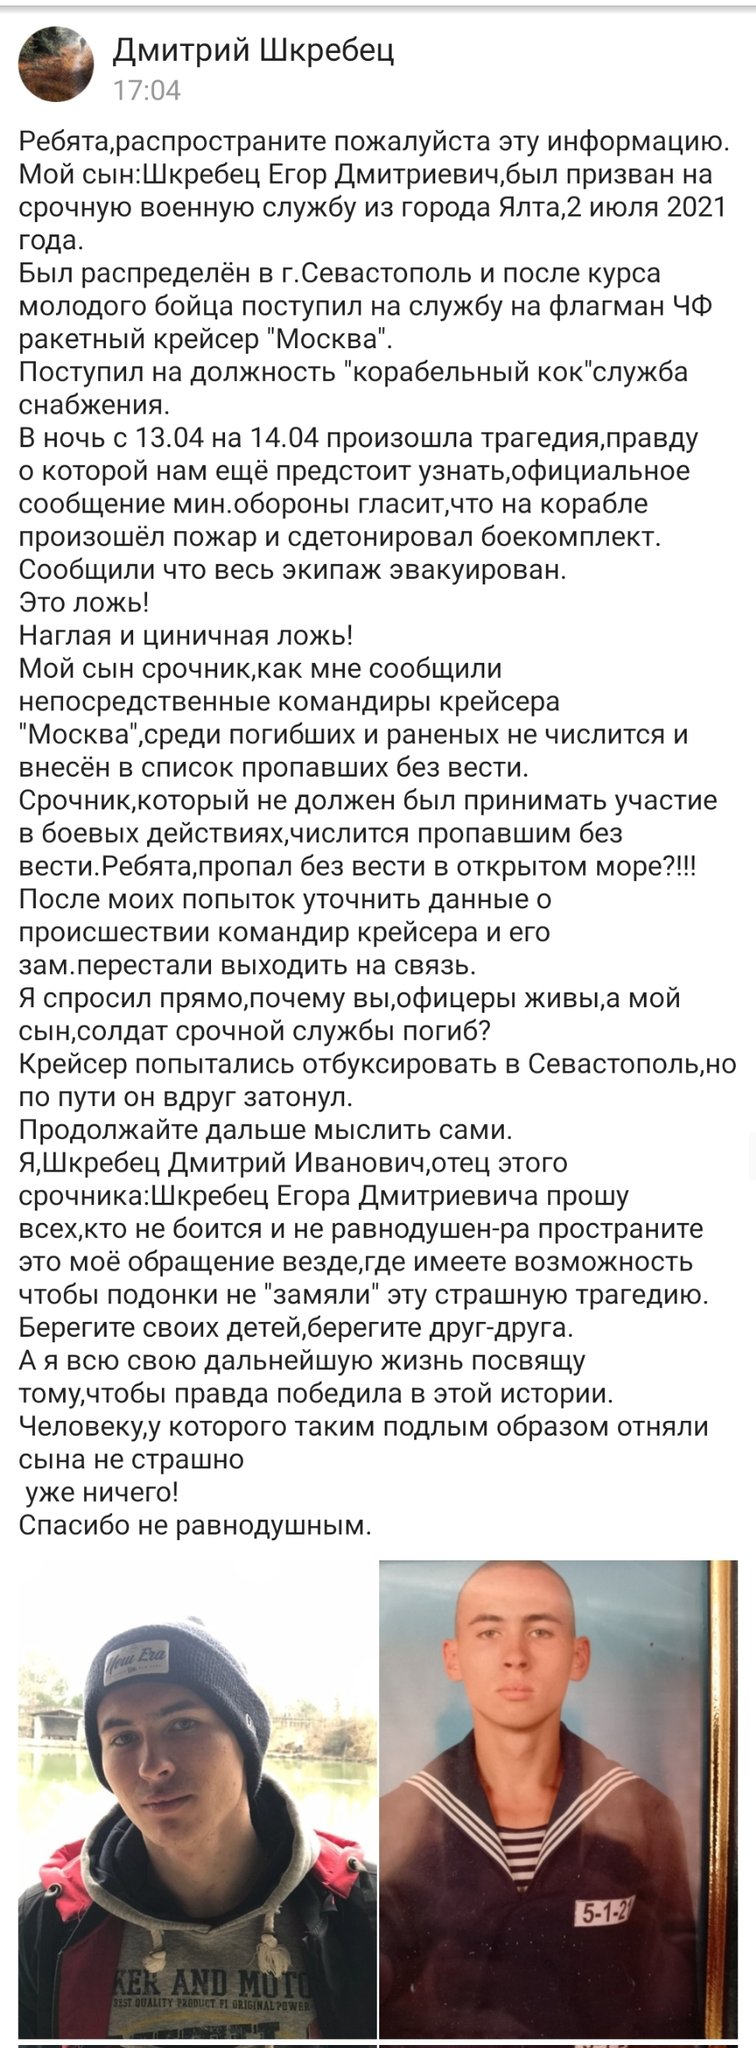 Батьку російського строковика Шкребеця повідомили, що його син зник без вісті на крейсері Москва 03